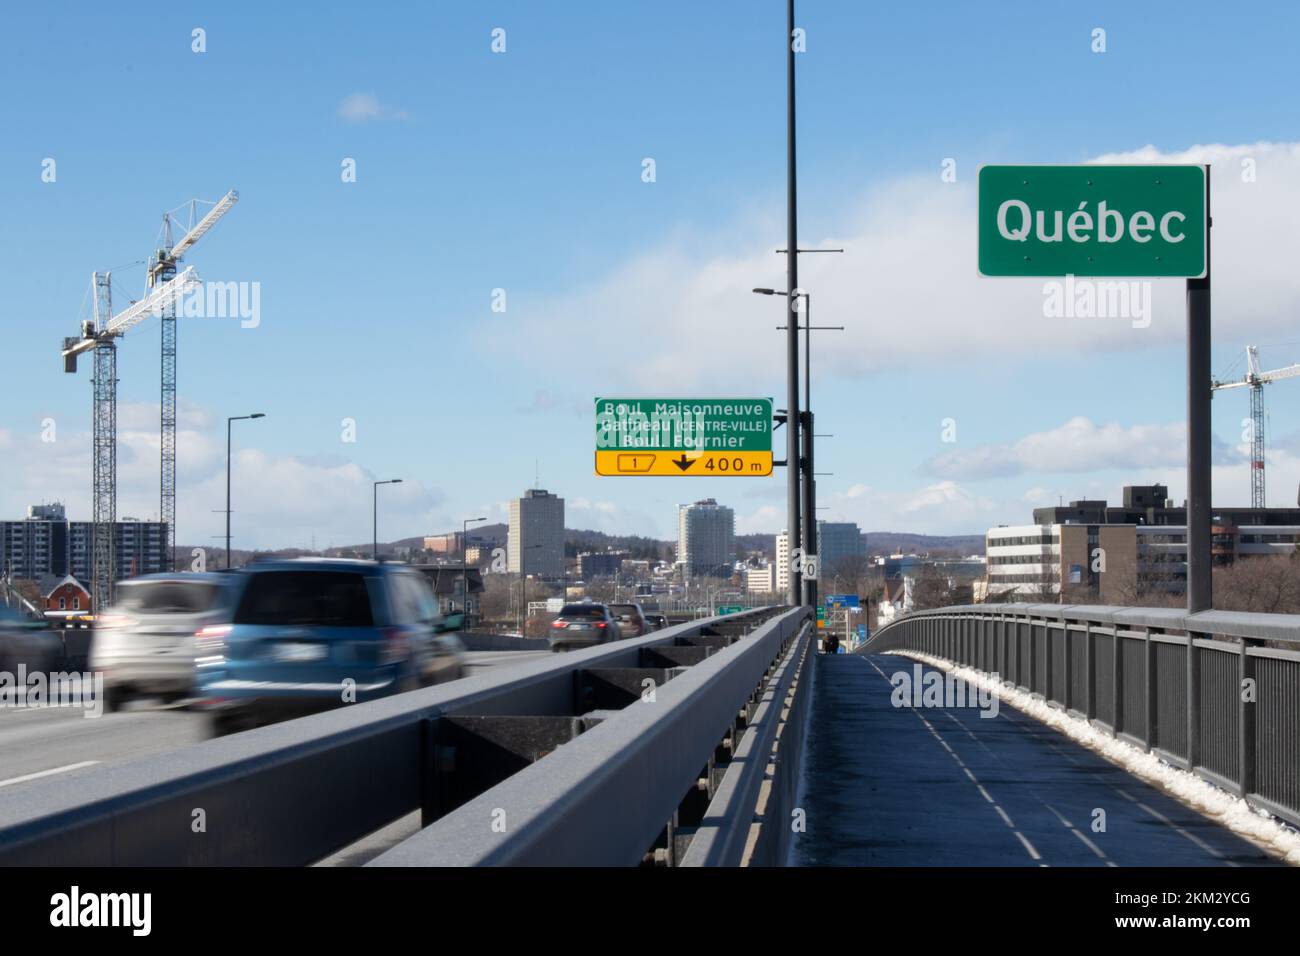 Un panneau « Québec » marquant le début de la province de Québec sur le pont Macdonald-Cartier, de l'autre côté de la rivière des Outaouais. Banque D'Images